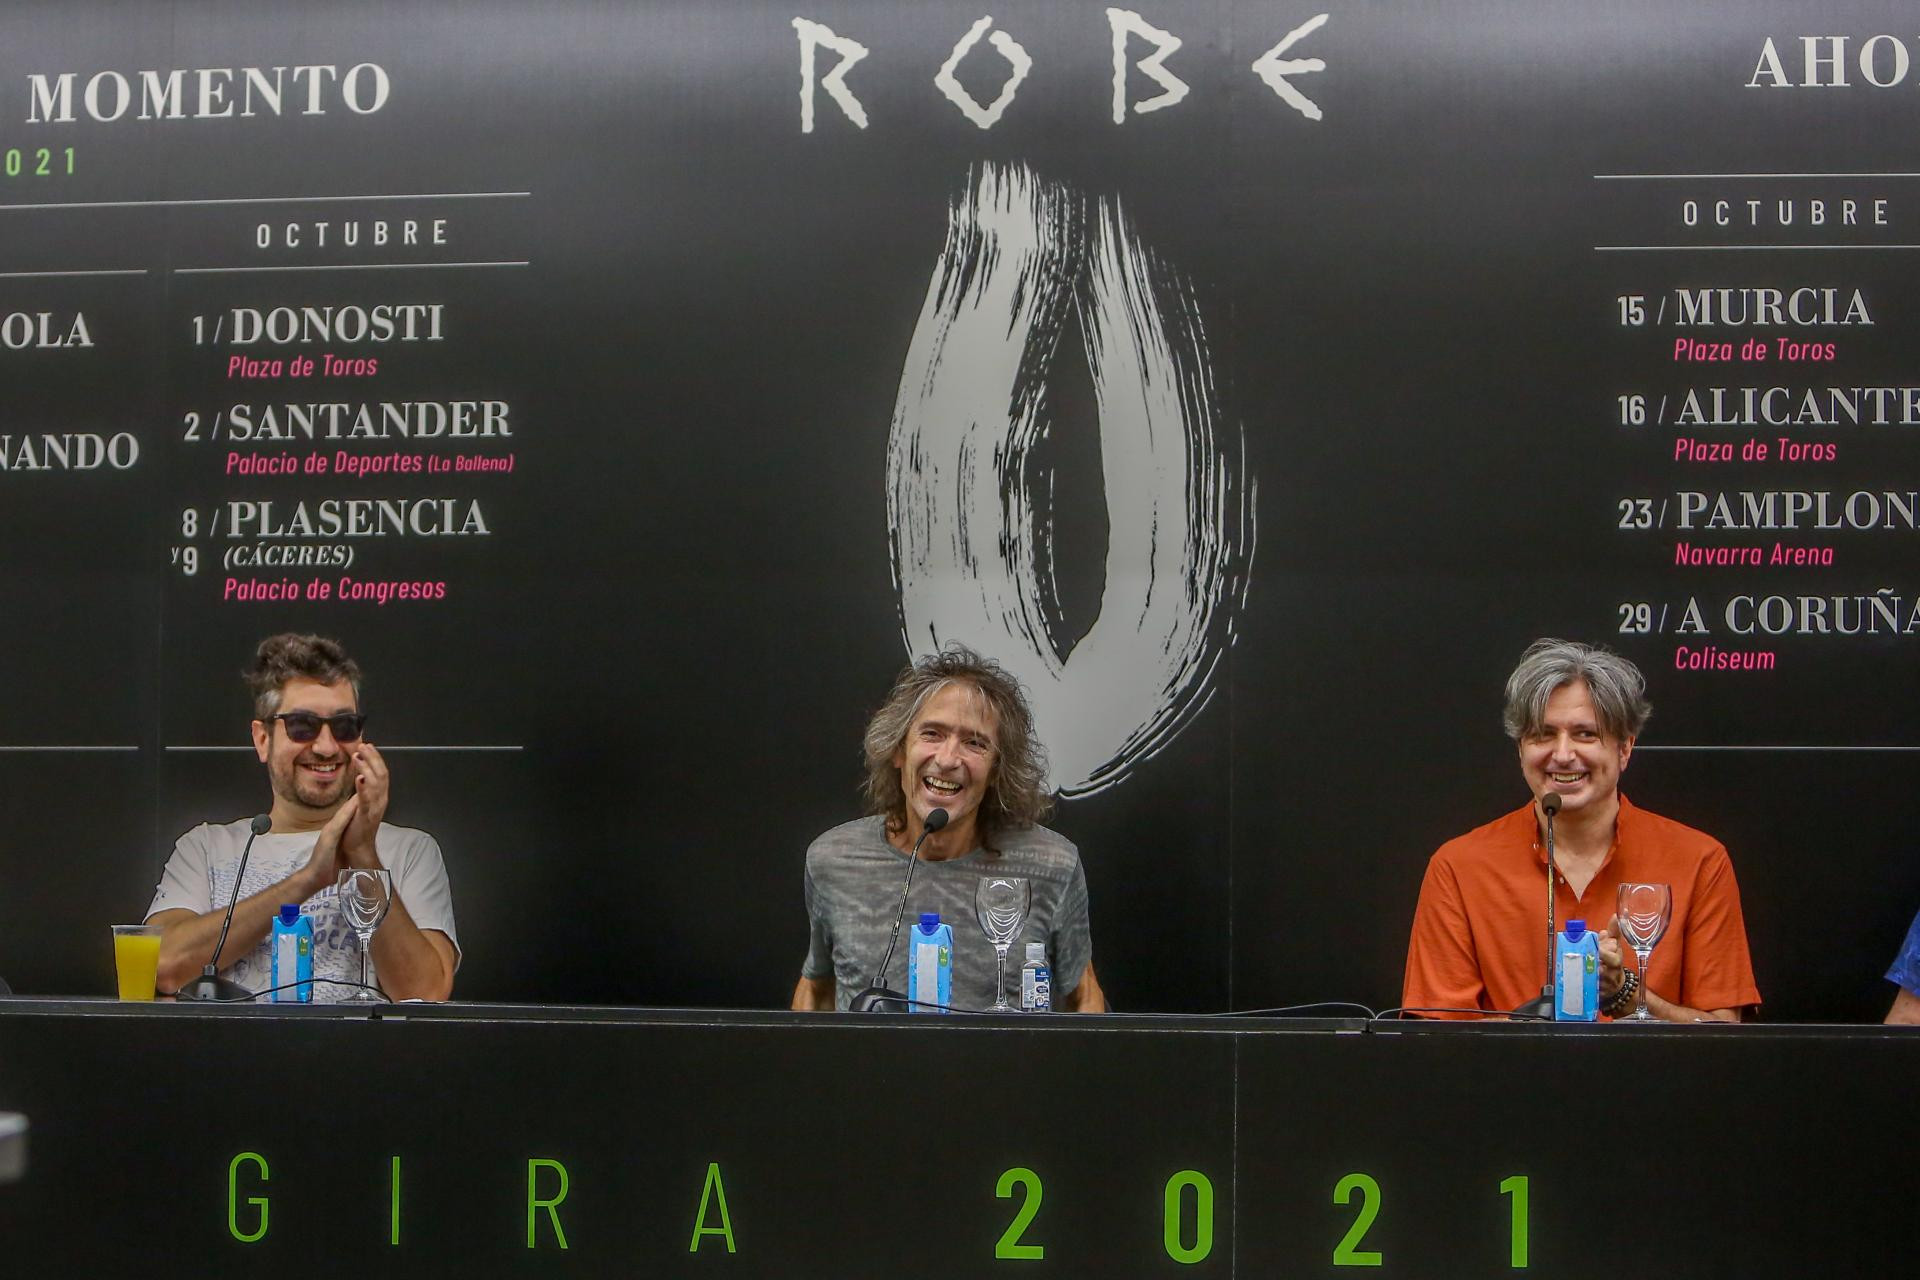 Robe Iniesta actuará en A Coruña el próximo mes de julio - Enfoques